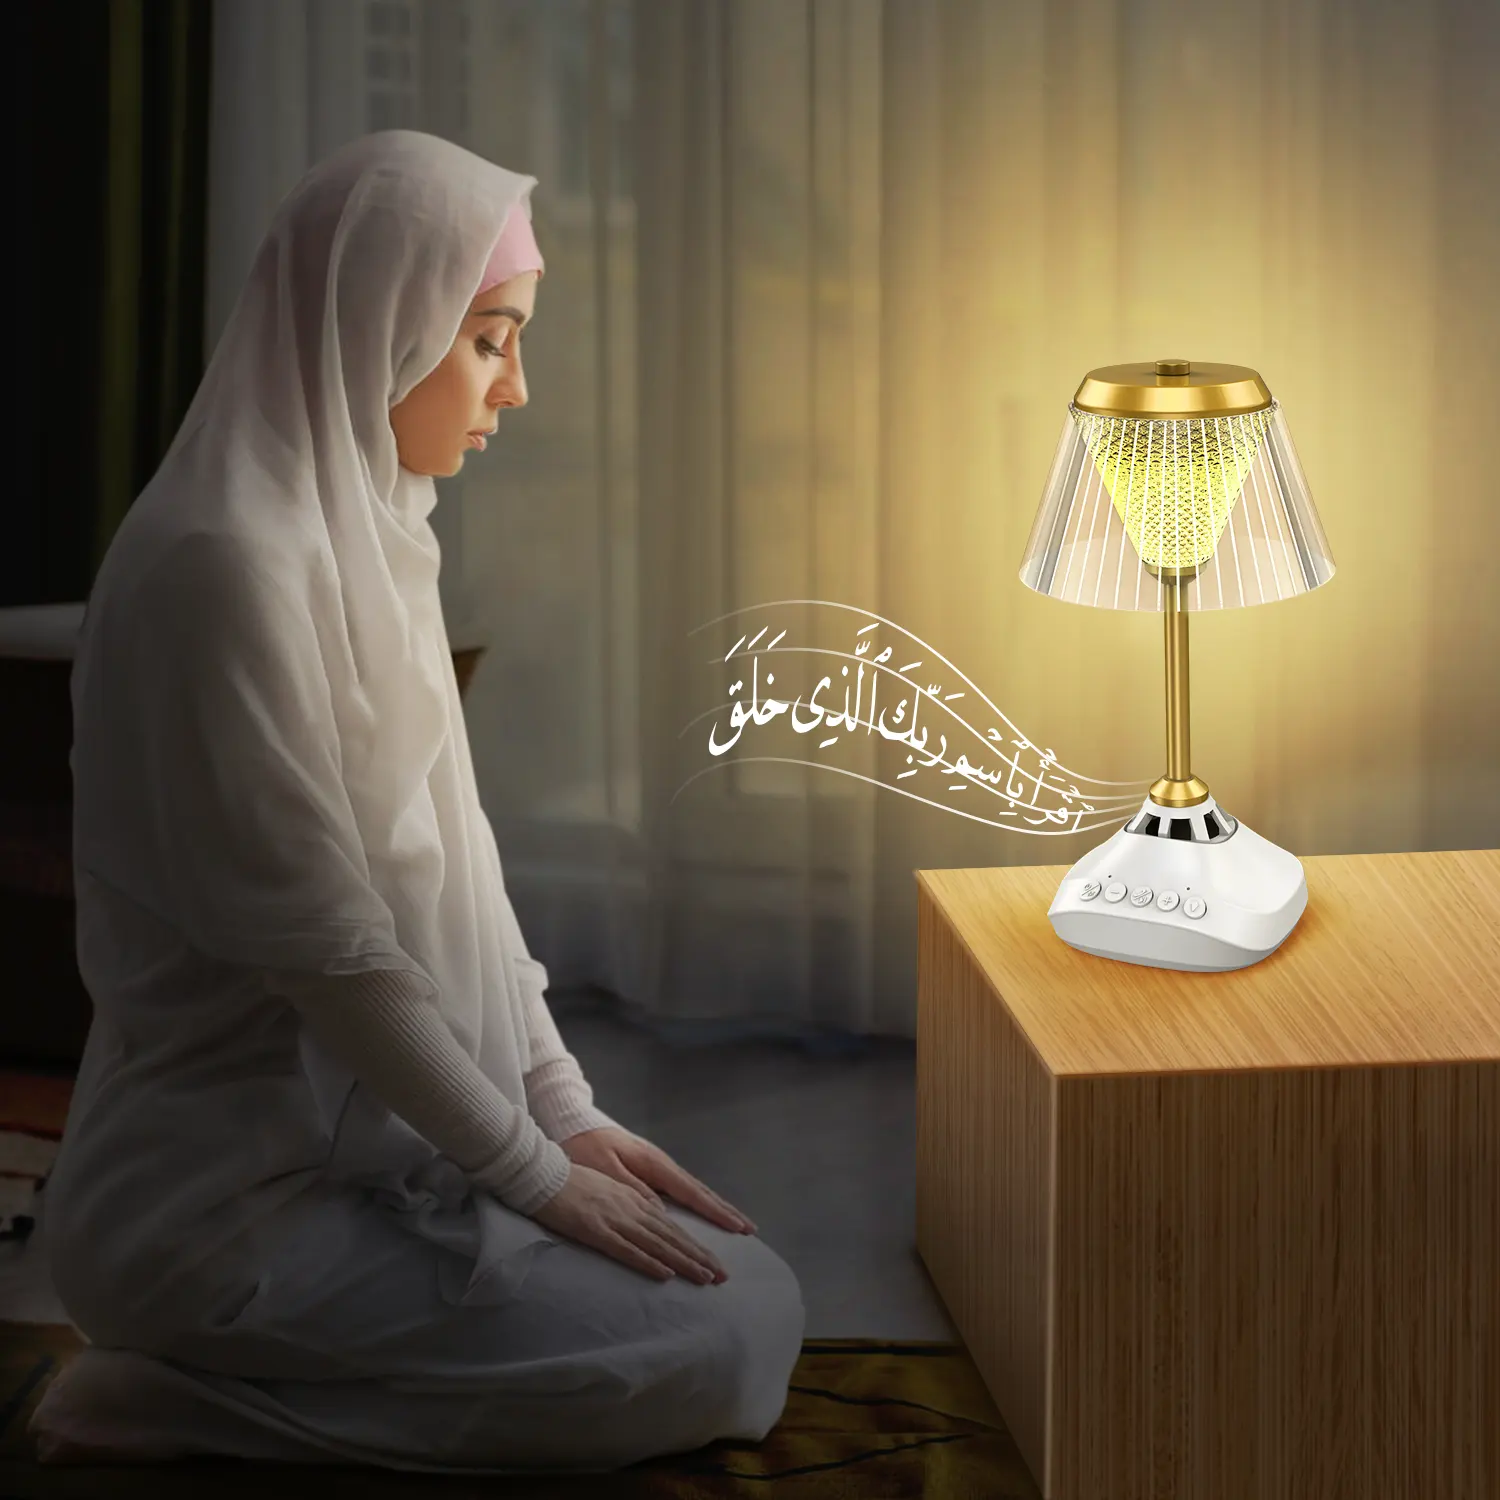 Hadiah Ramadan Islam lampu meja Speaker Quran anak Muslim aplikasi pembelajaran Quran pengendali jarak jauh Digital pemutar MP3 pengeras suara Quran